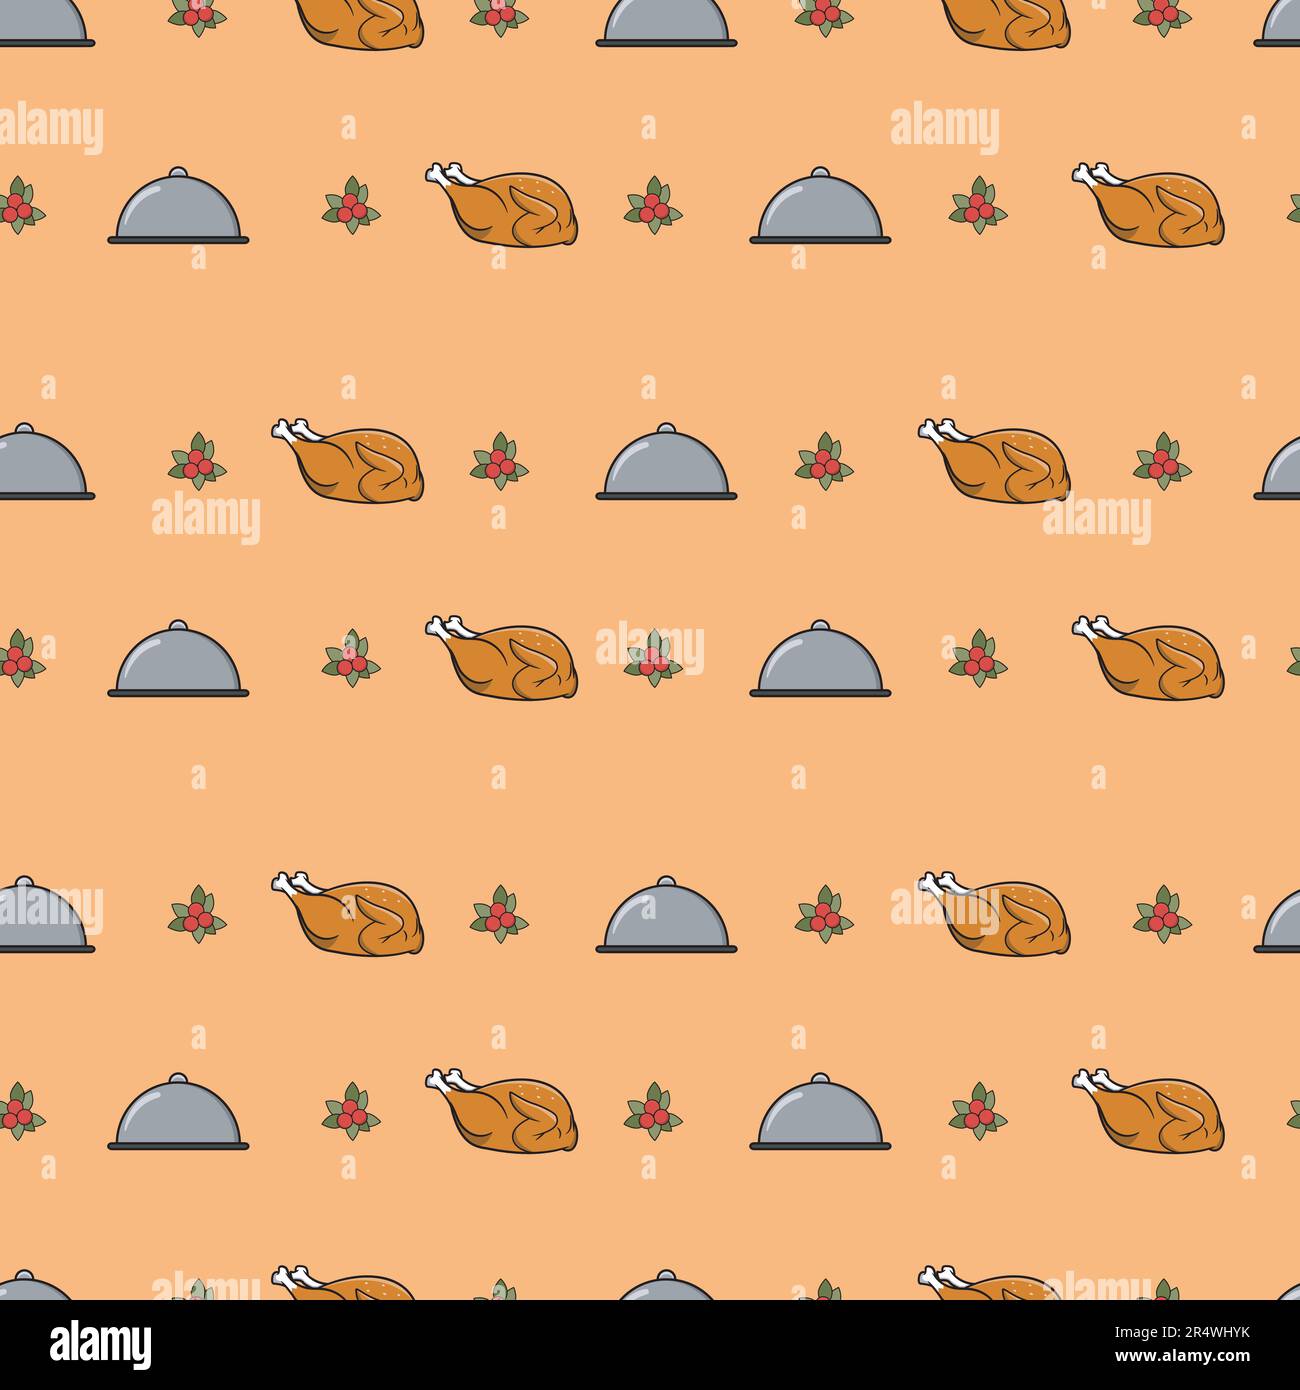 Süße, nahtlose Herbstmuster für Hintergrundbilder und Wanddesign mit Chrrey, Food und Chicken. Vektor und Illustration. Stock Vektor